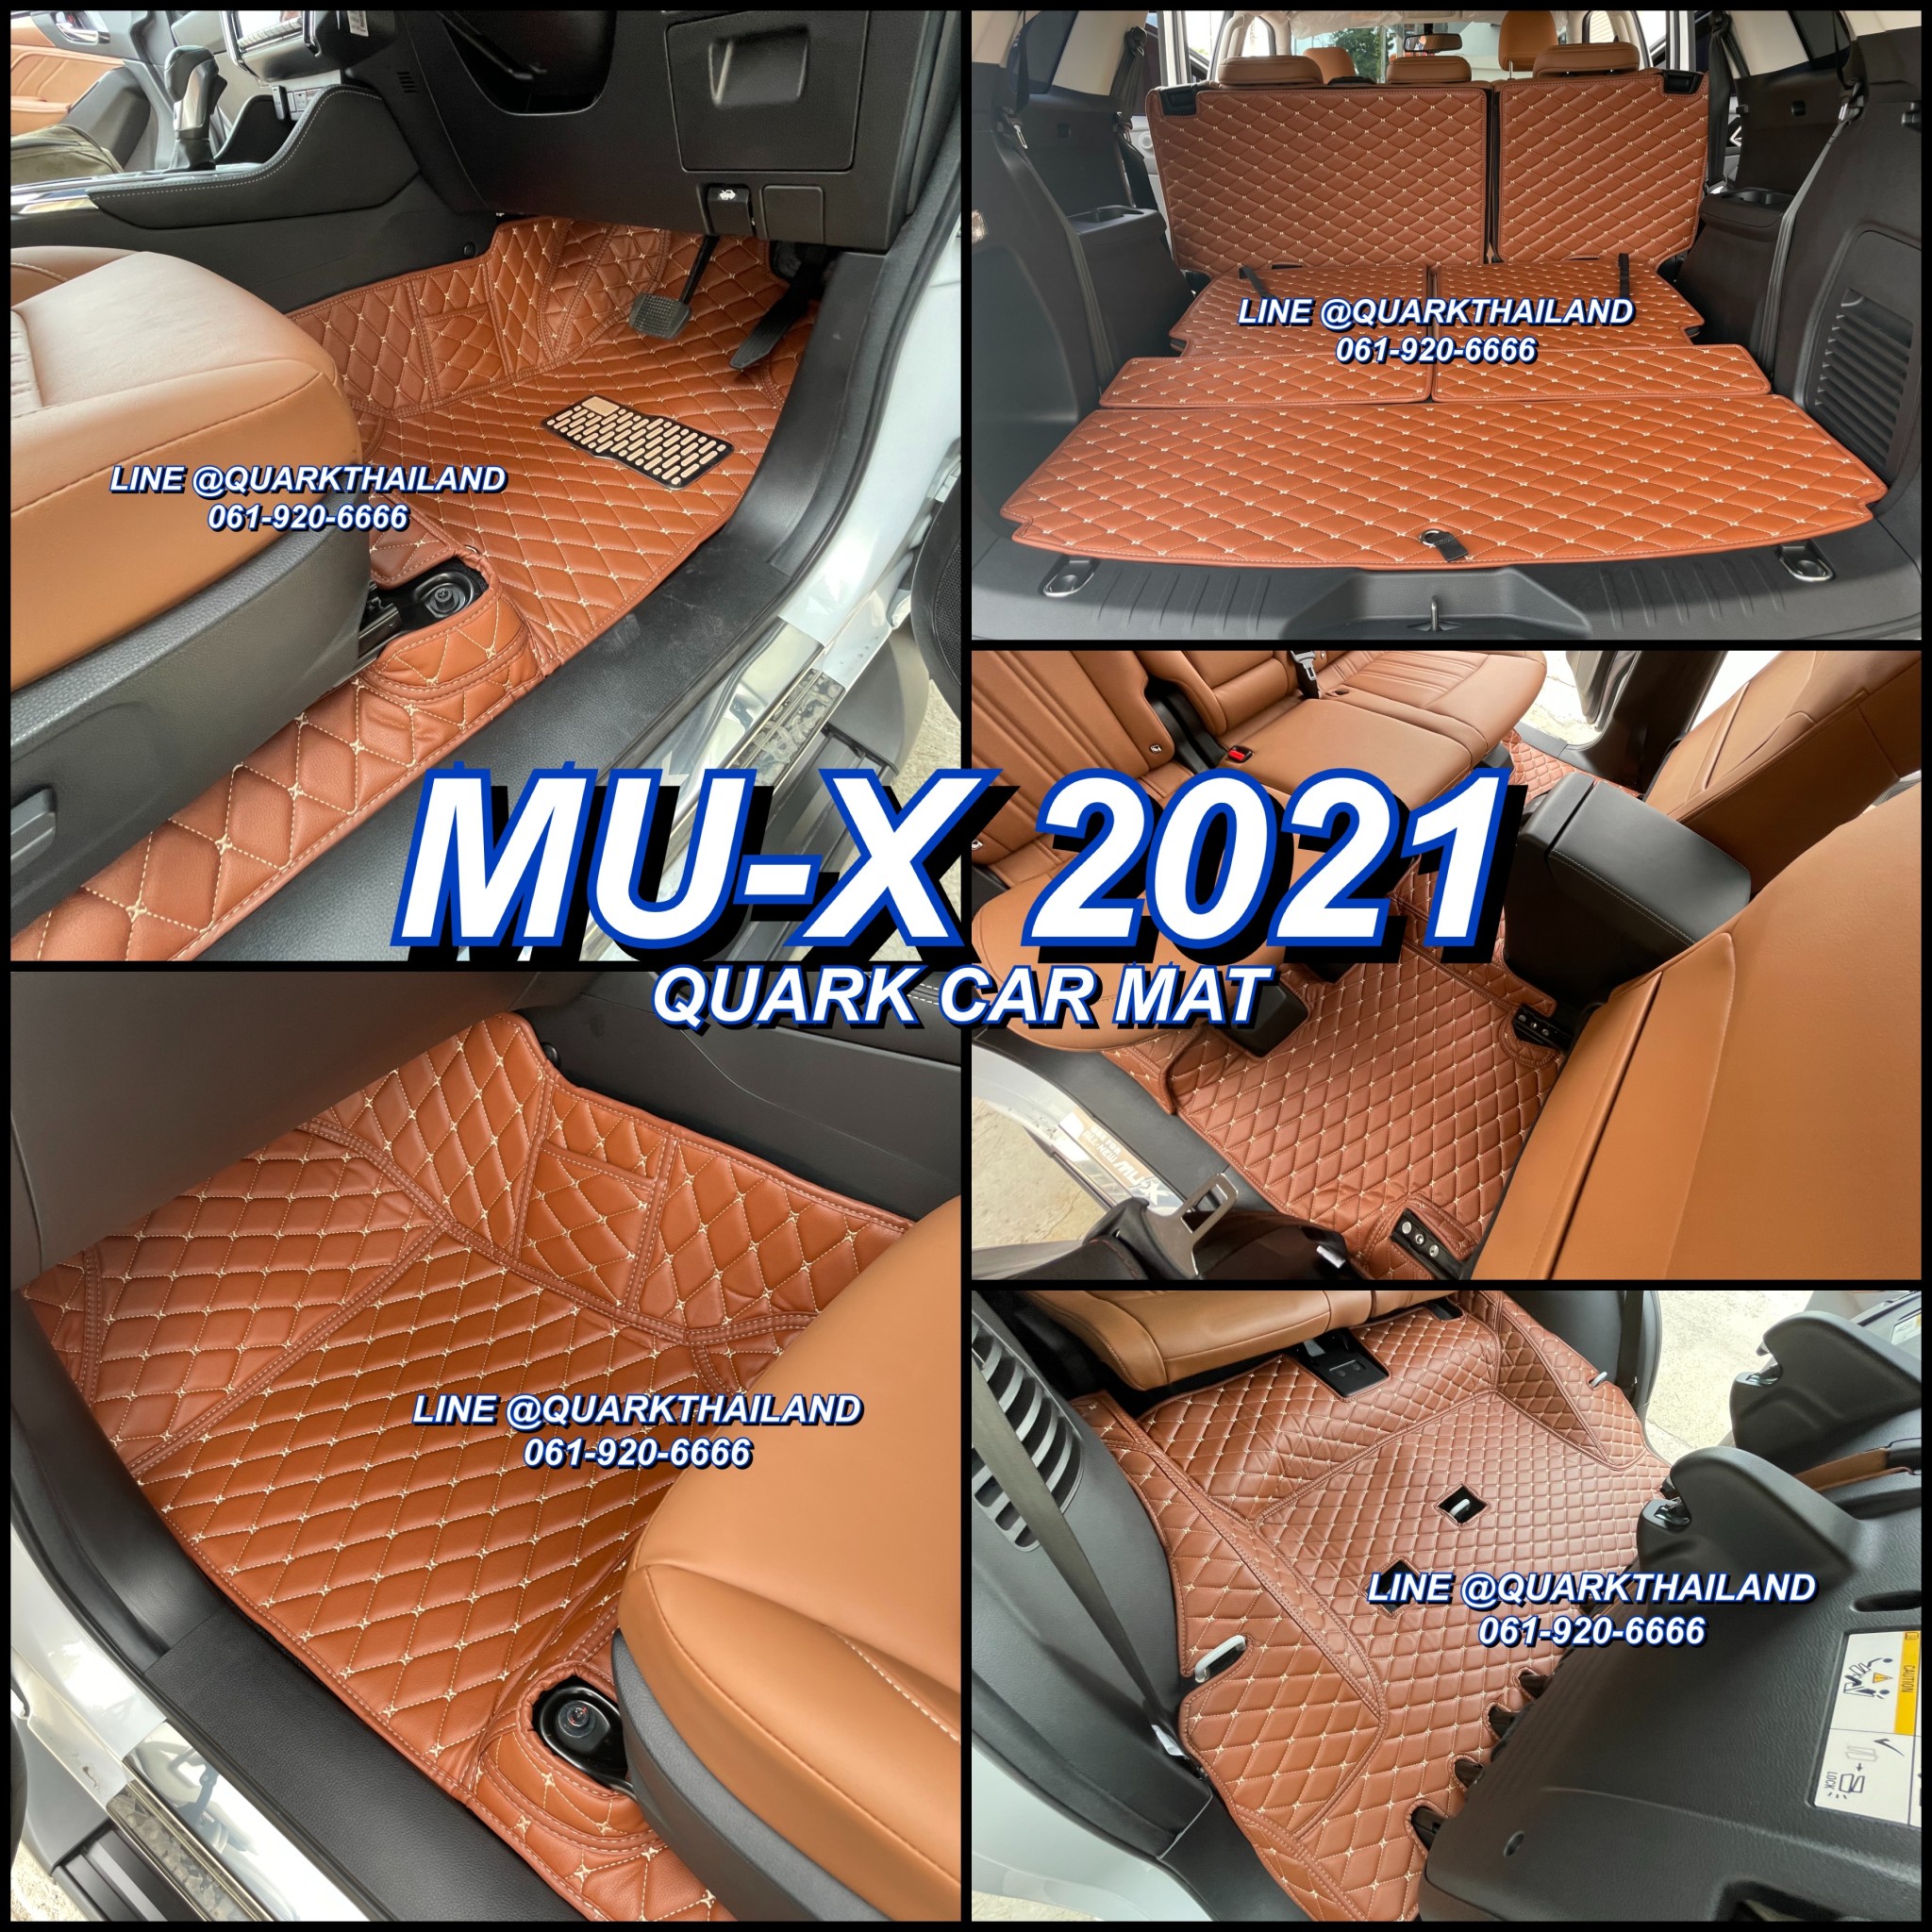 พรม6D MU-X 2021 รุ่นใหม่ มิวเอ็กซ์ ตรงรุ่น เต็มทั้งคัน ครบทุกสี